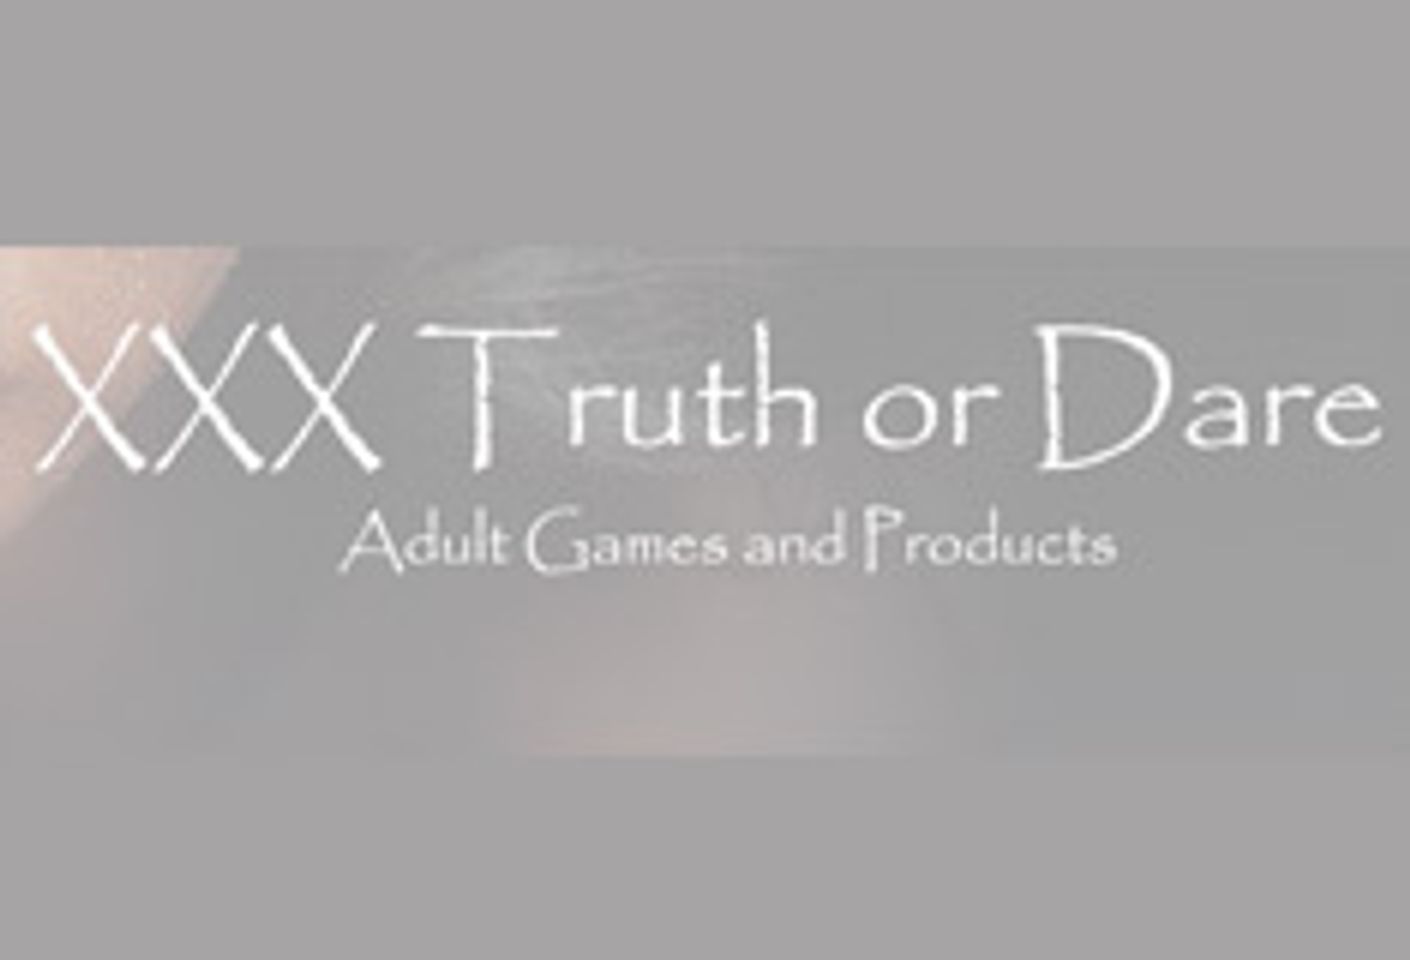 XXX Truth or Dare Announces New Twist on Classic Board Game